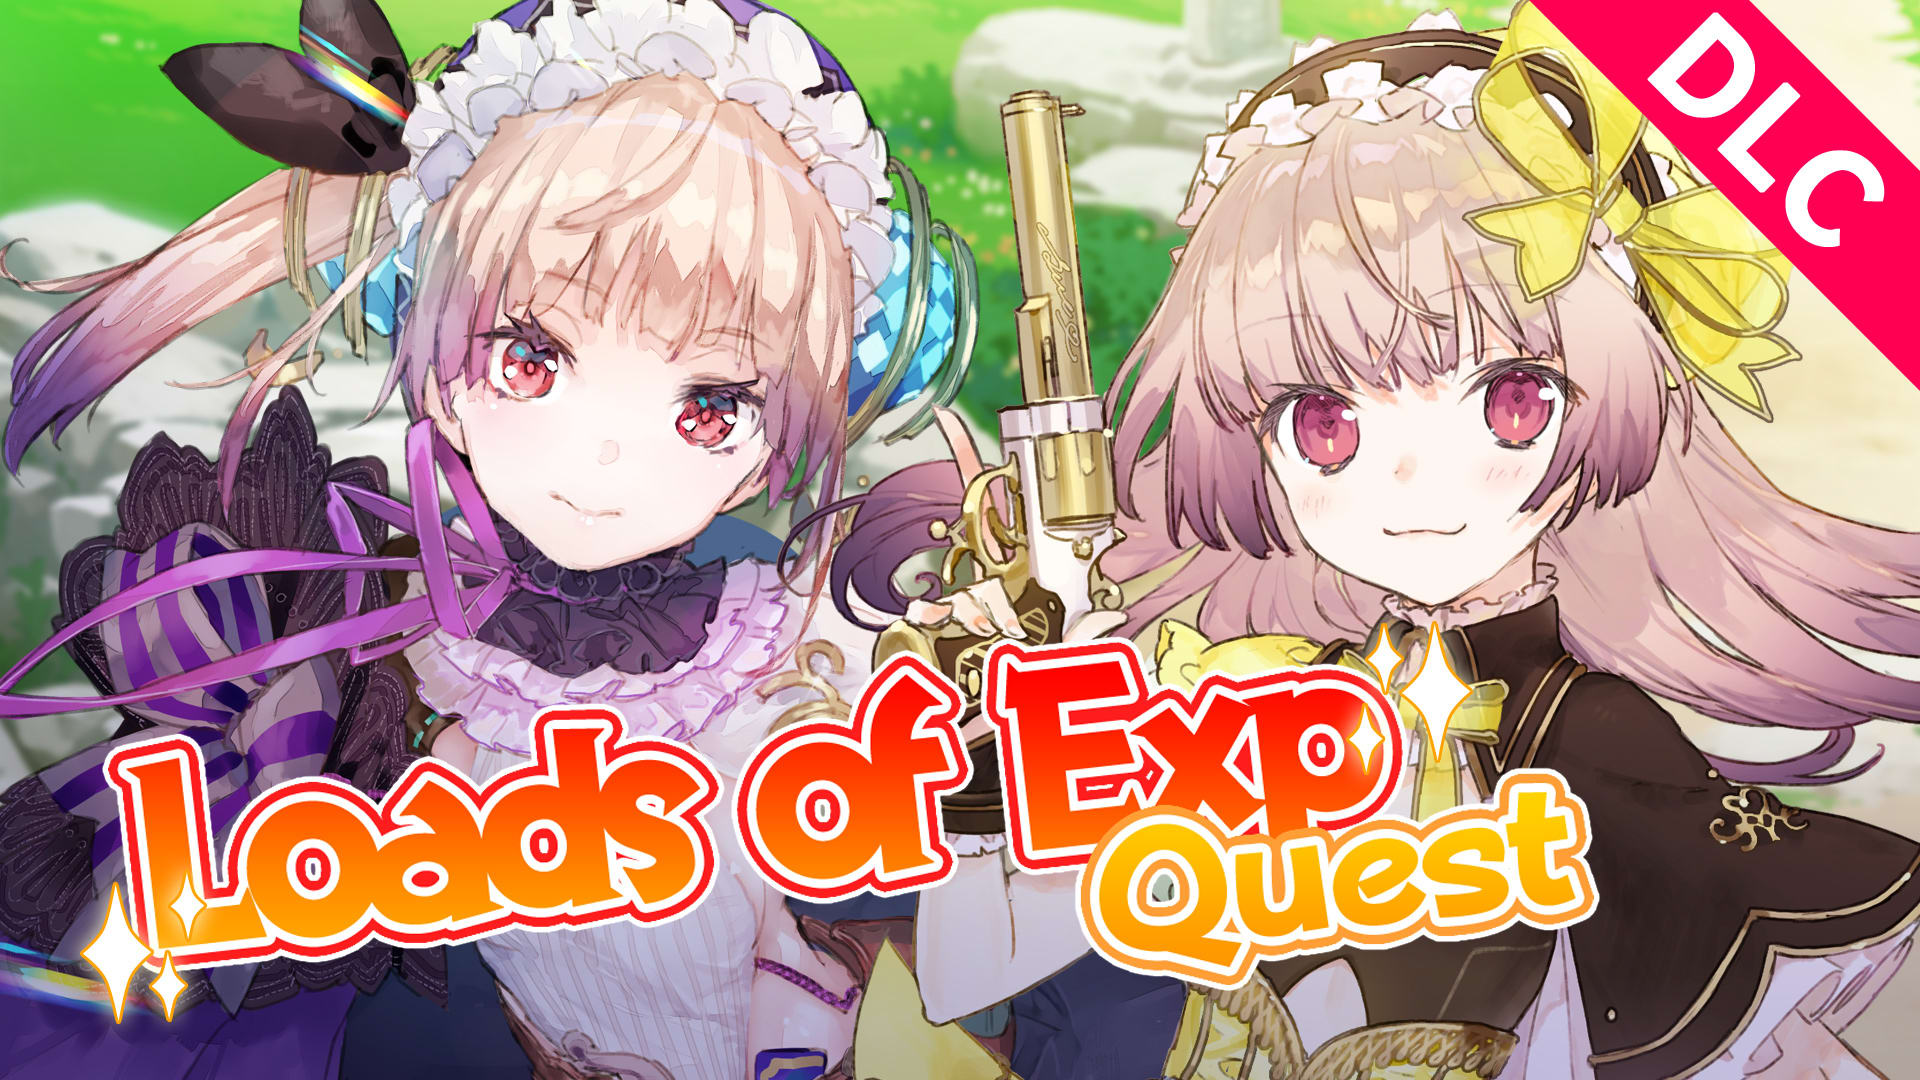 Atelier Lydie & Suelle: New Quest "Loads of Exp Quest"